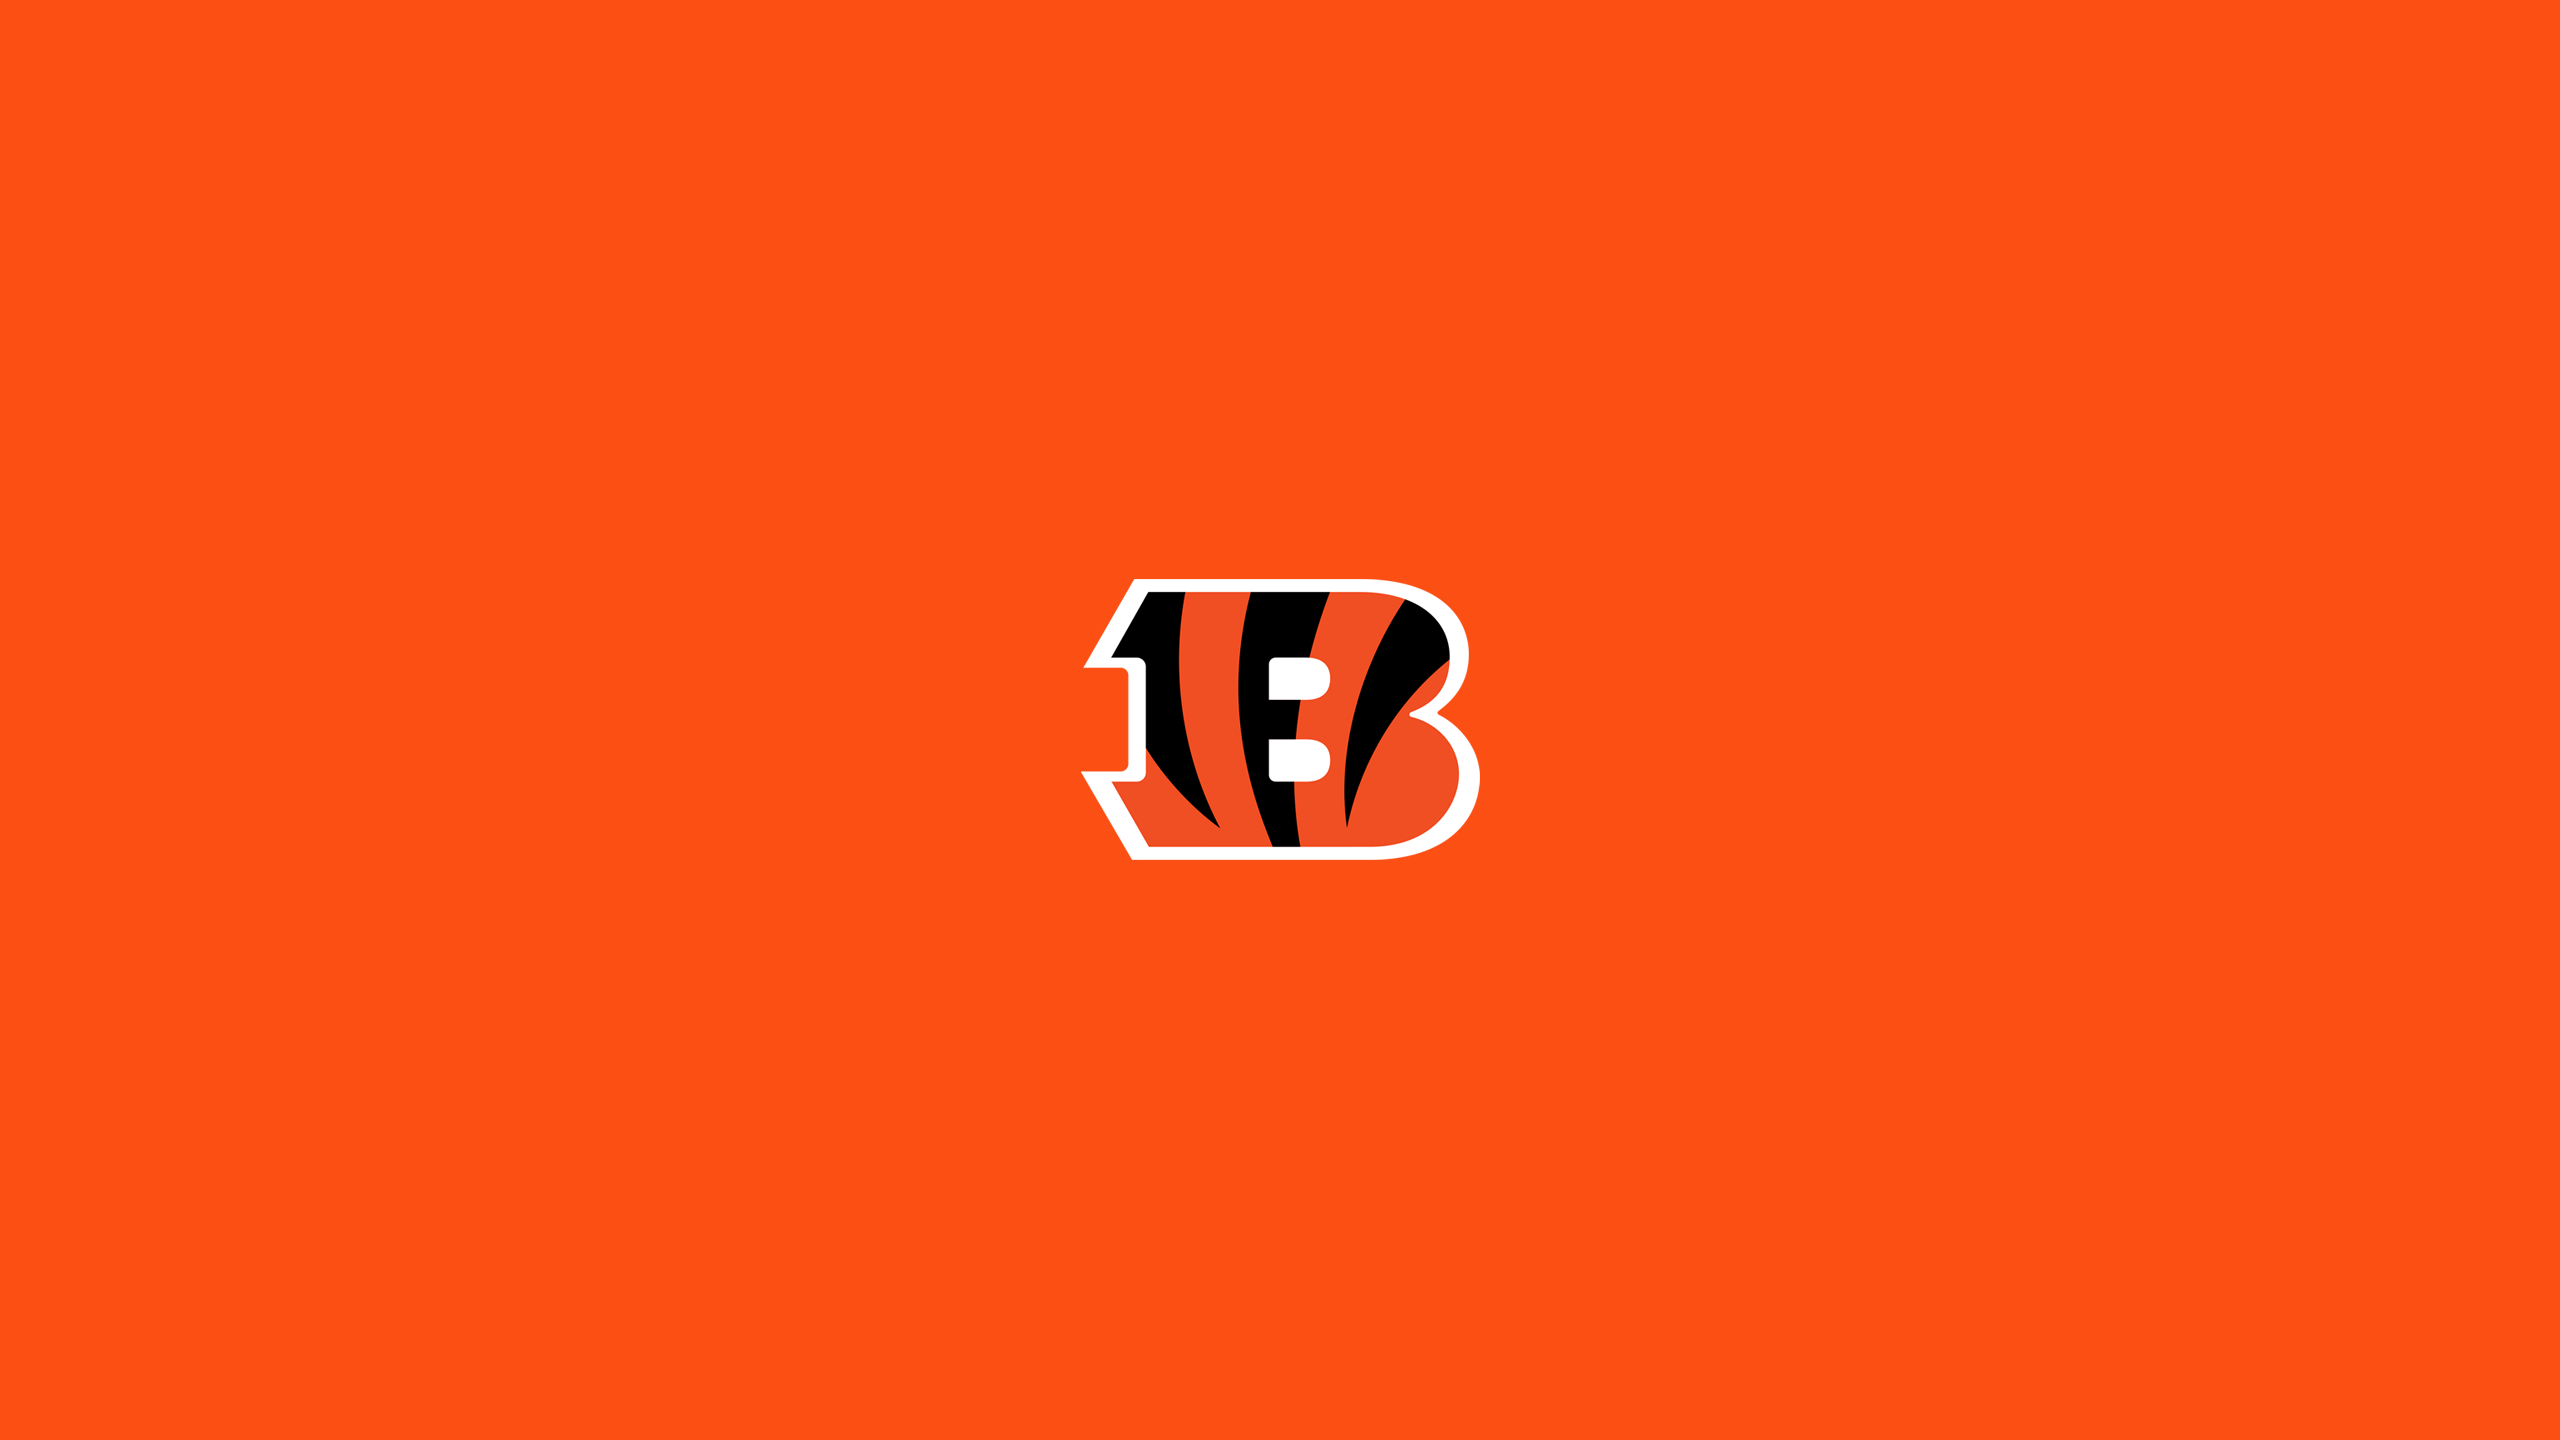 Cincinnati Bengals - NFL - Square Bettor